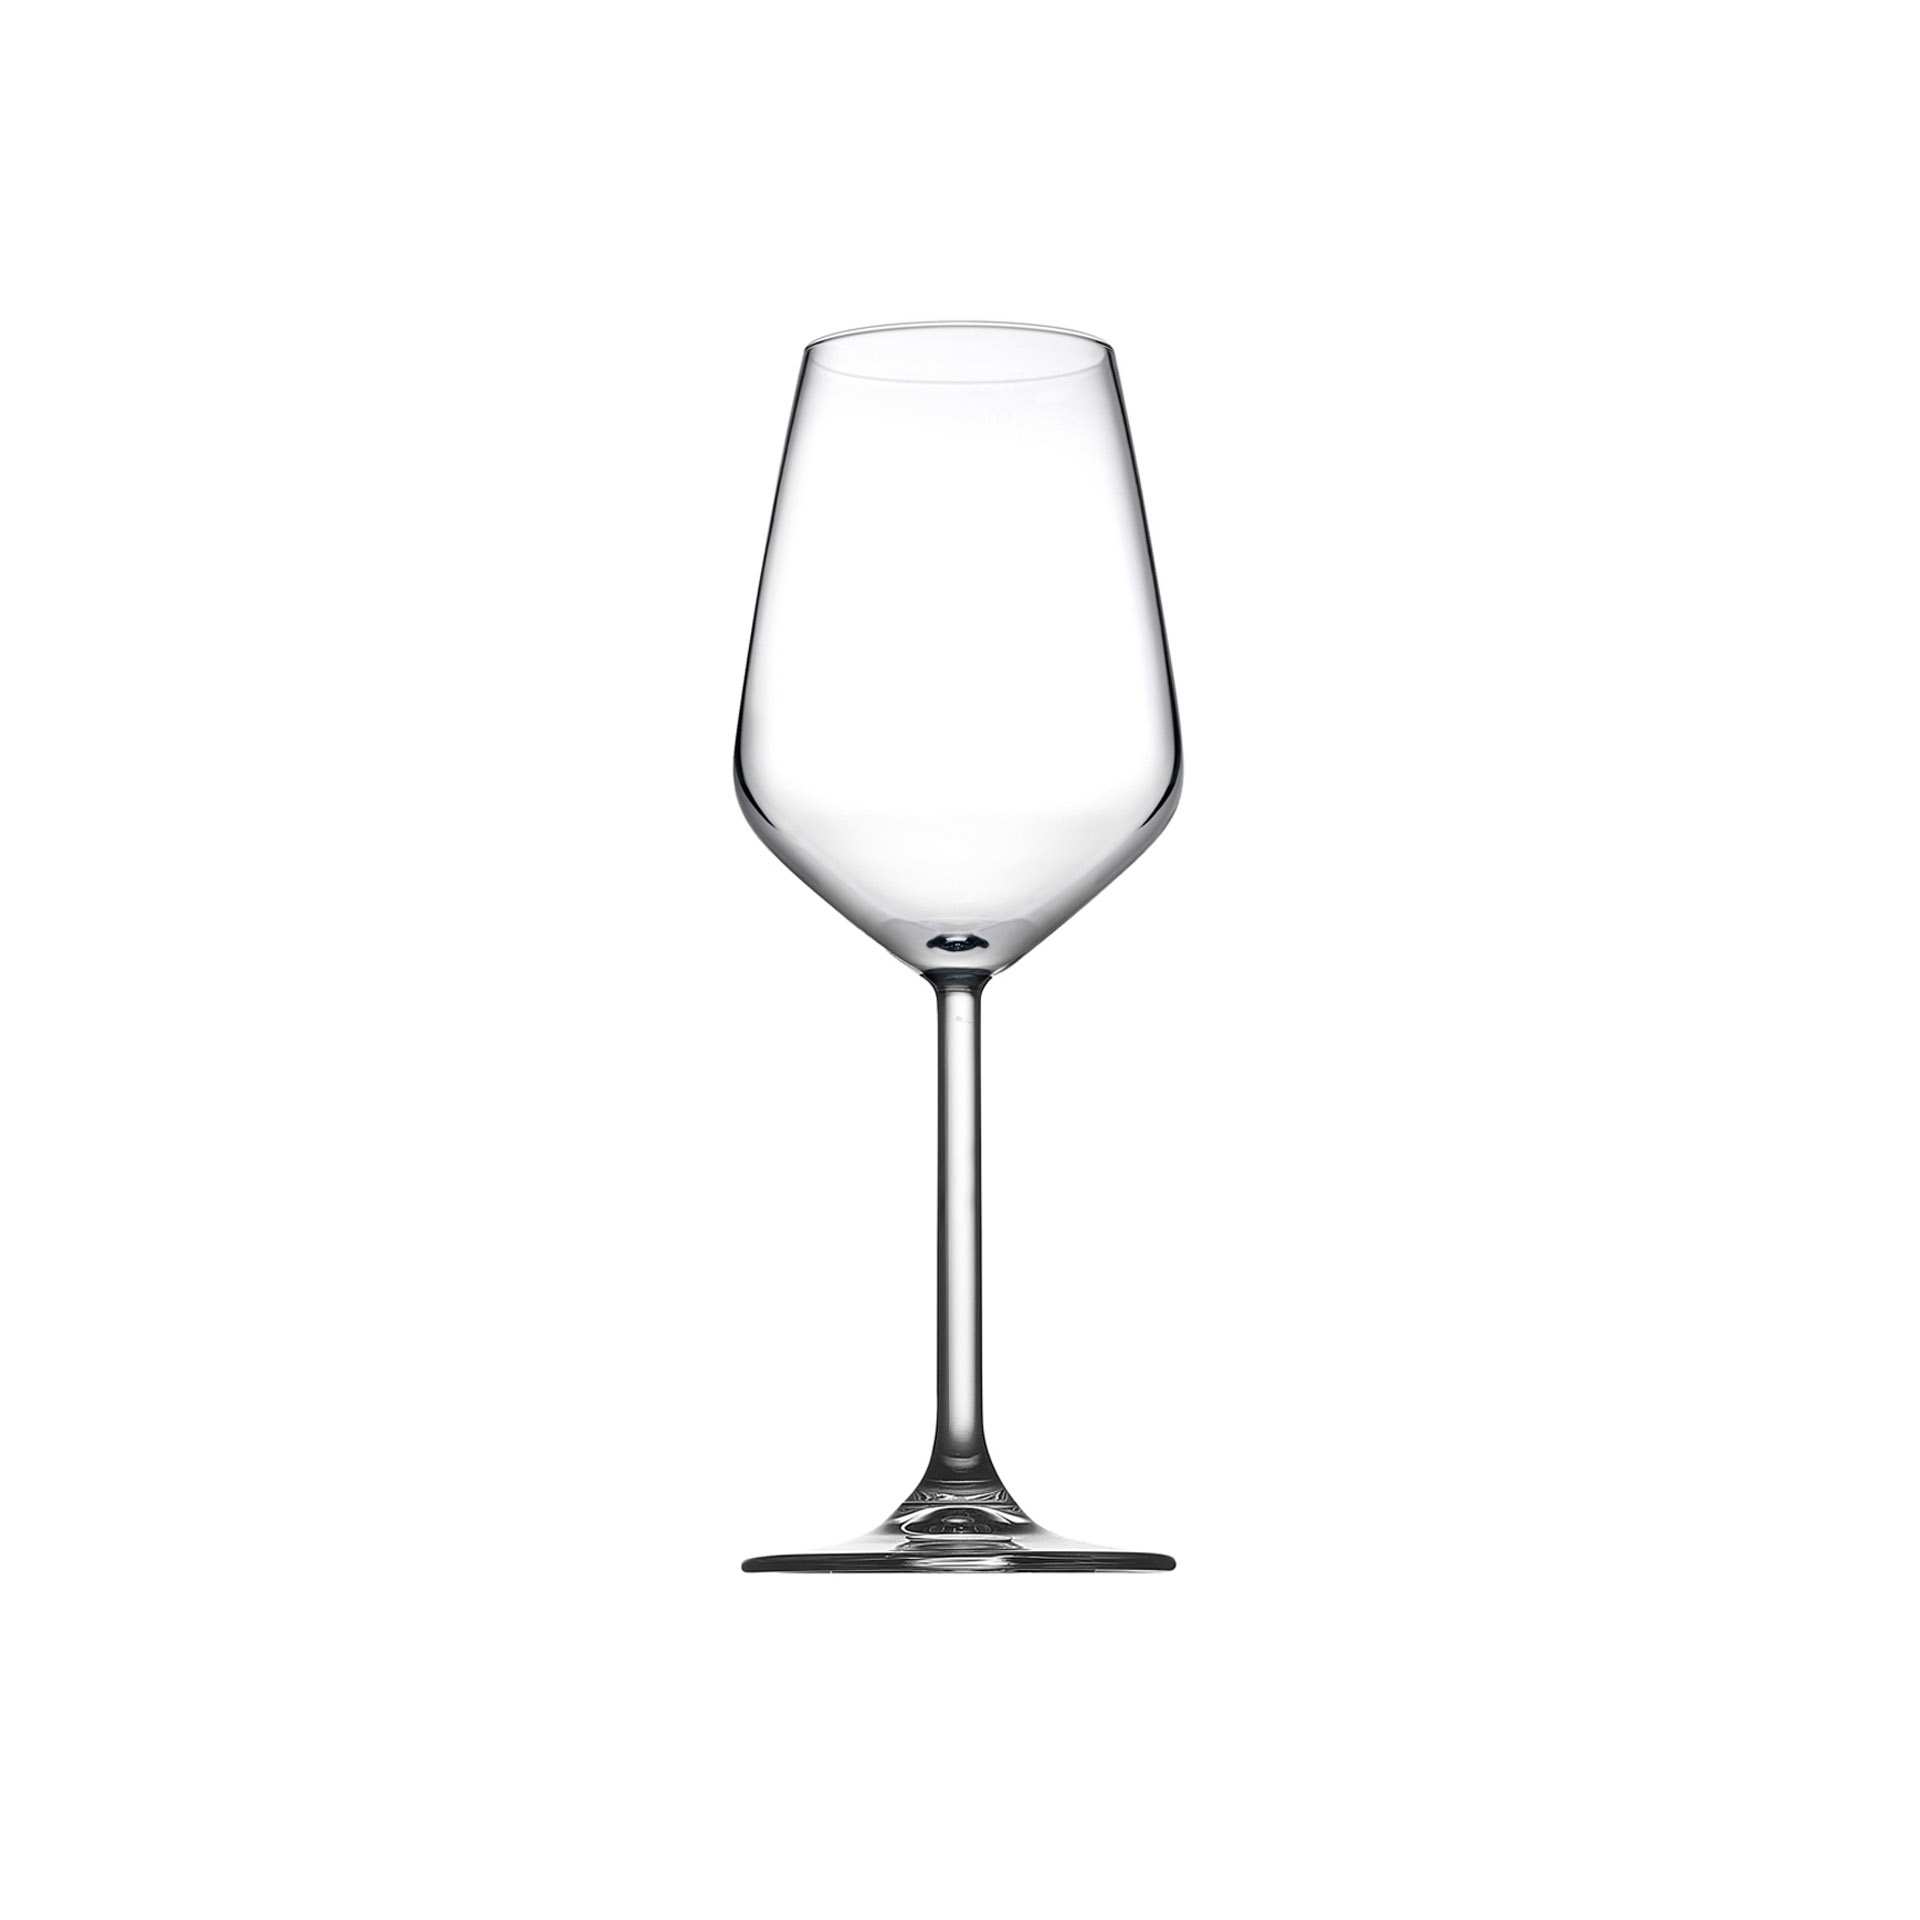 Weinglas - Set á 6 Stück - Serie Allegra - Höhe 21,0 cm - Ø oben / unten 7,85 / 7,5 cm - Inhalt 0,3 l - Glas - 440165-A